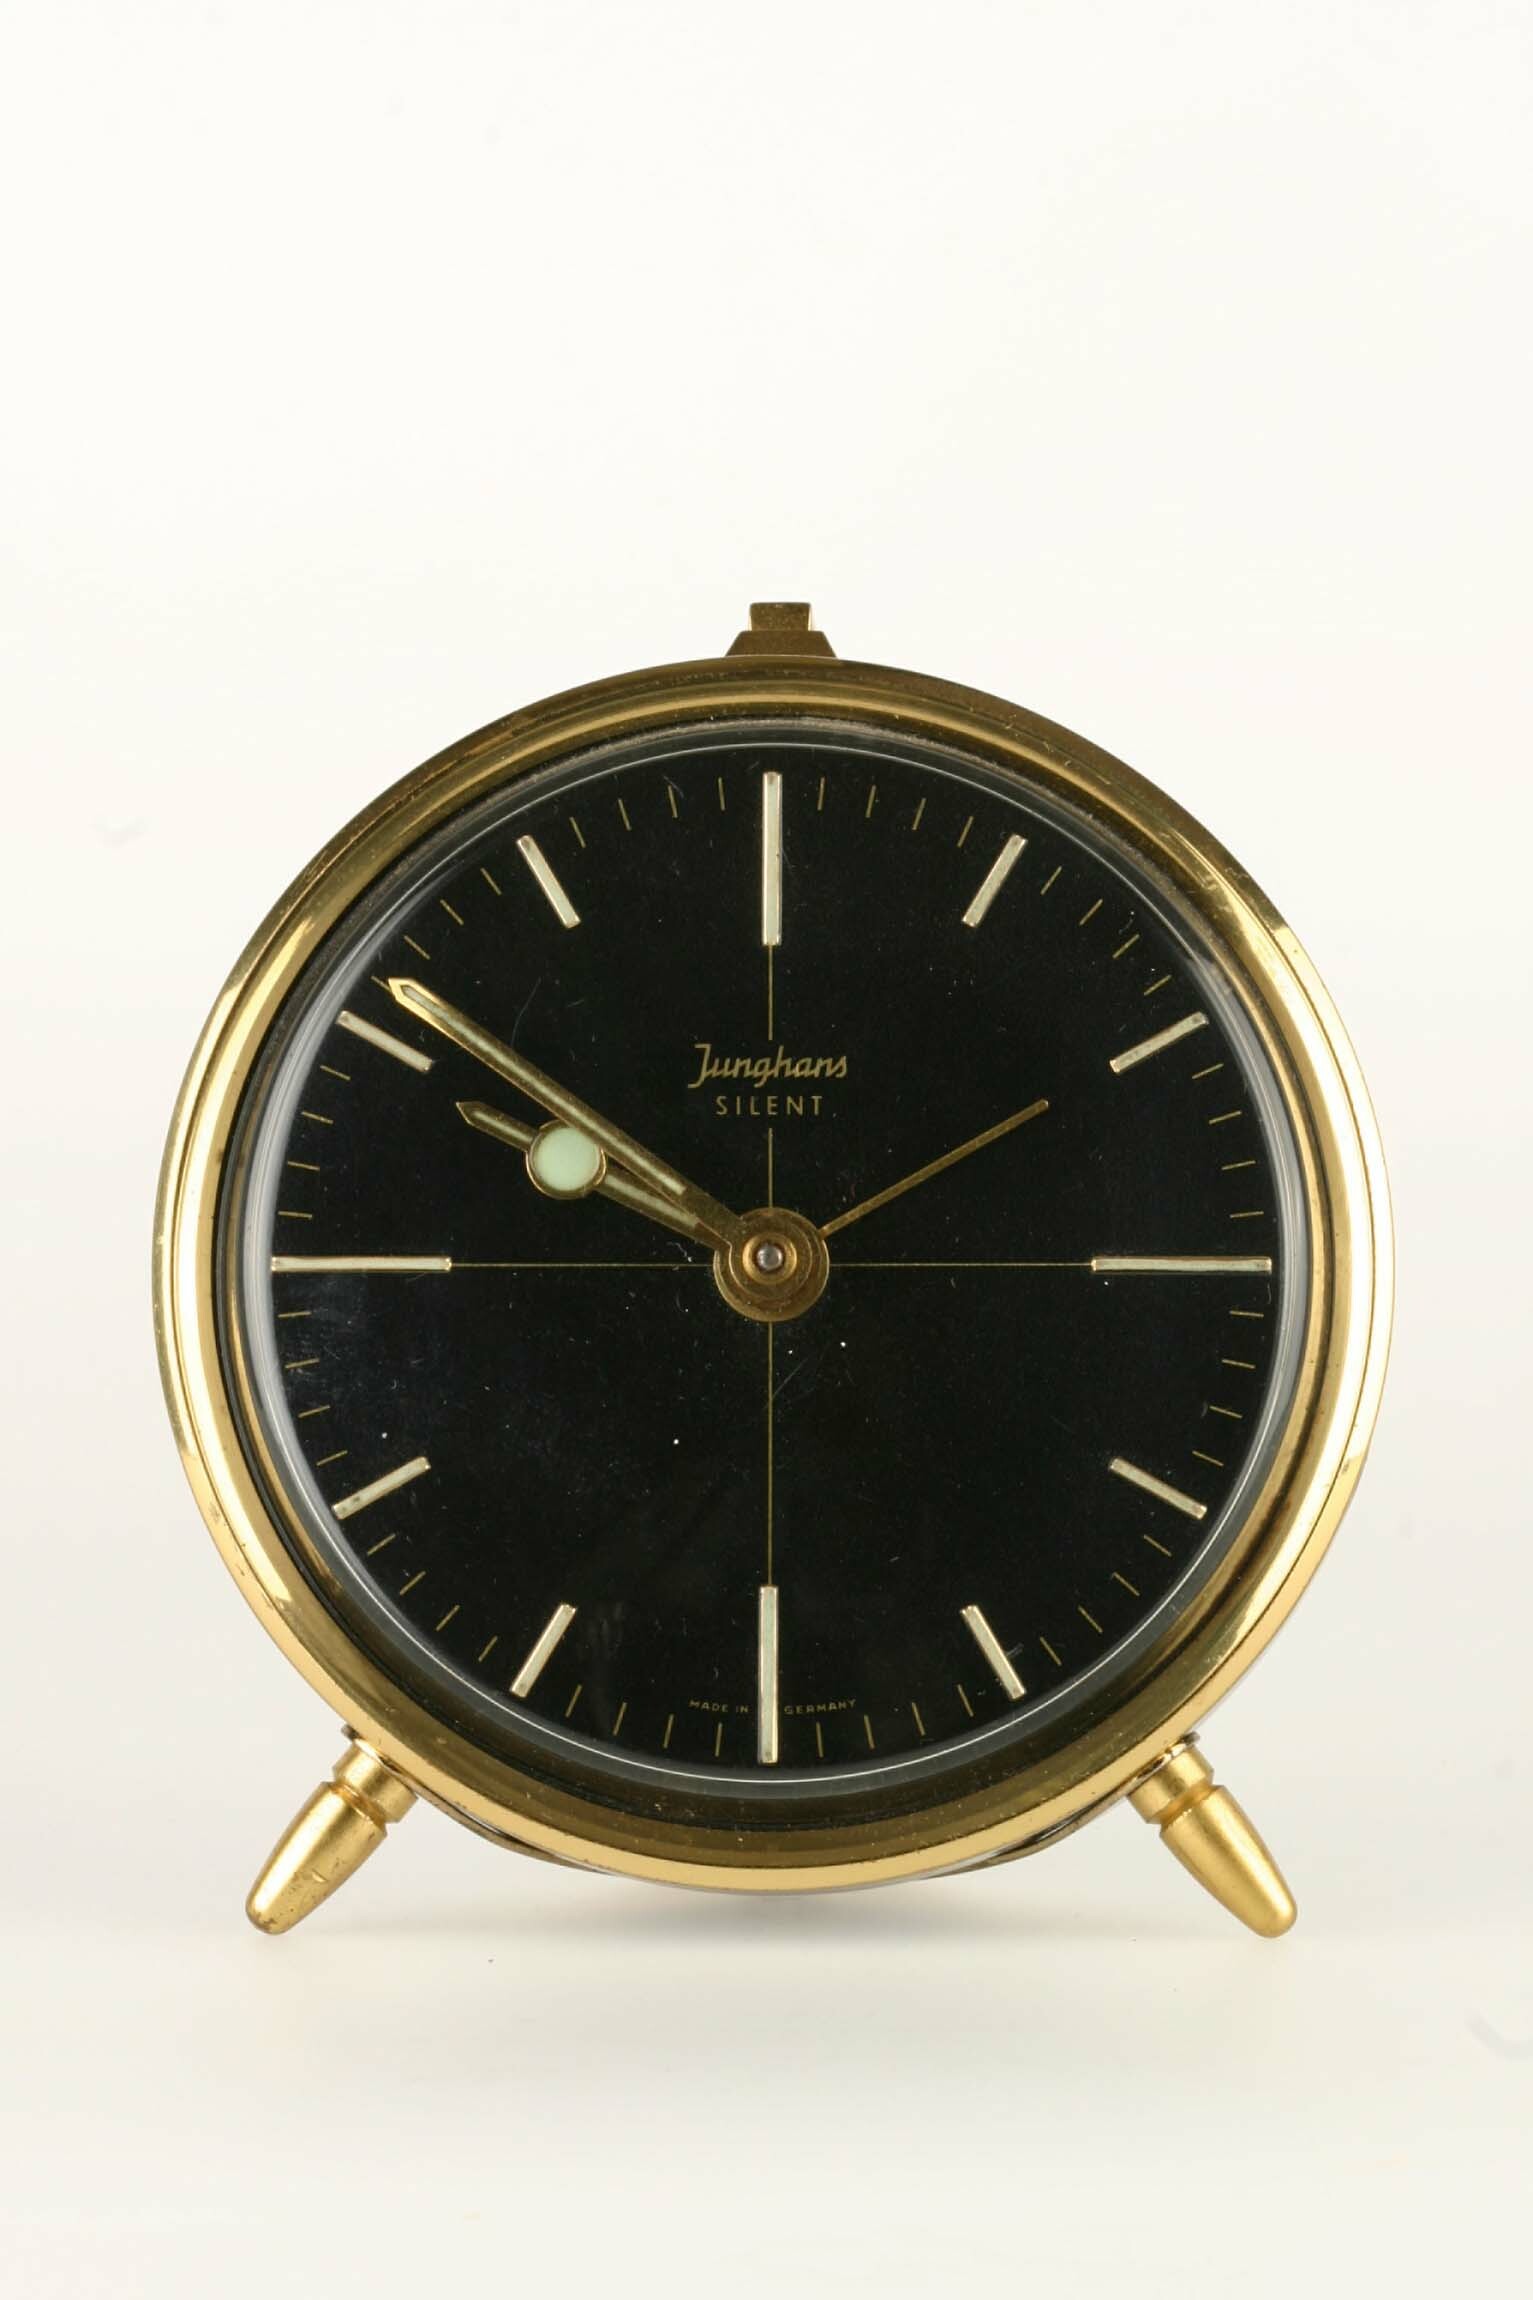 Rückwandglockenwecker, Junghans, um 1955 (Deutsches Uhrenmuseum CC BY-SA)